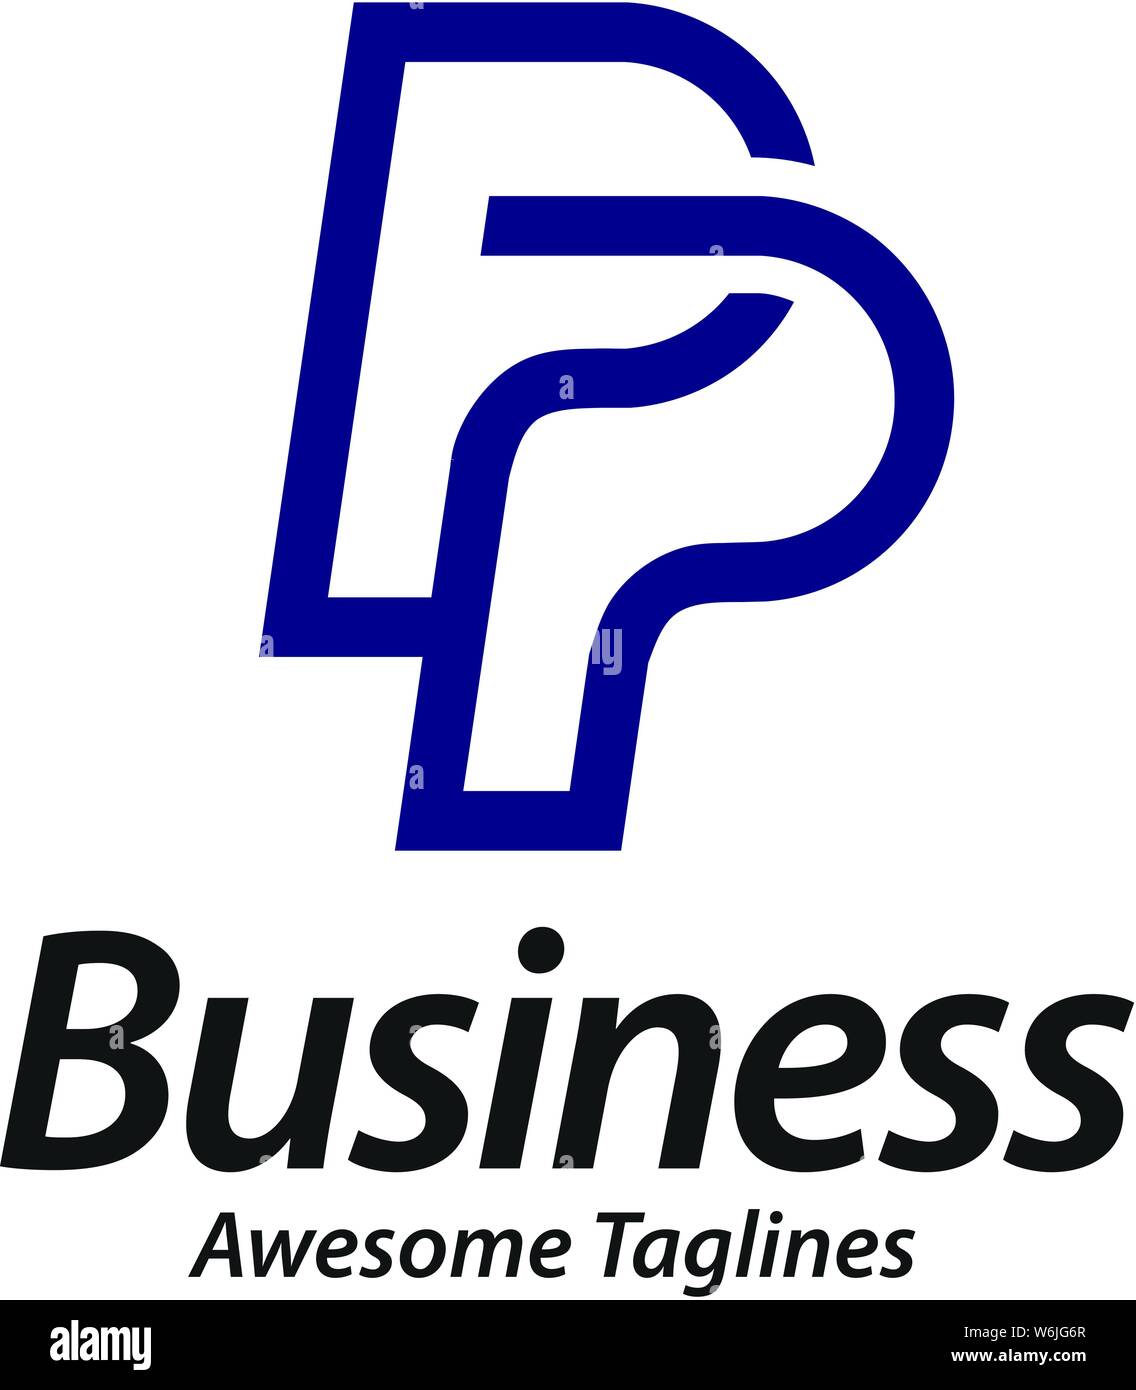 pp logo design